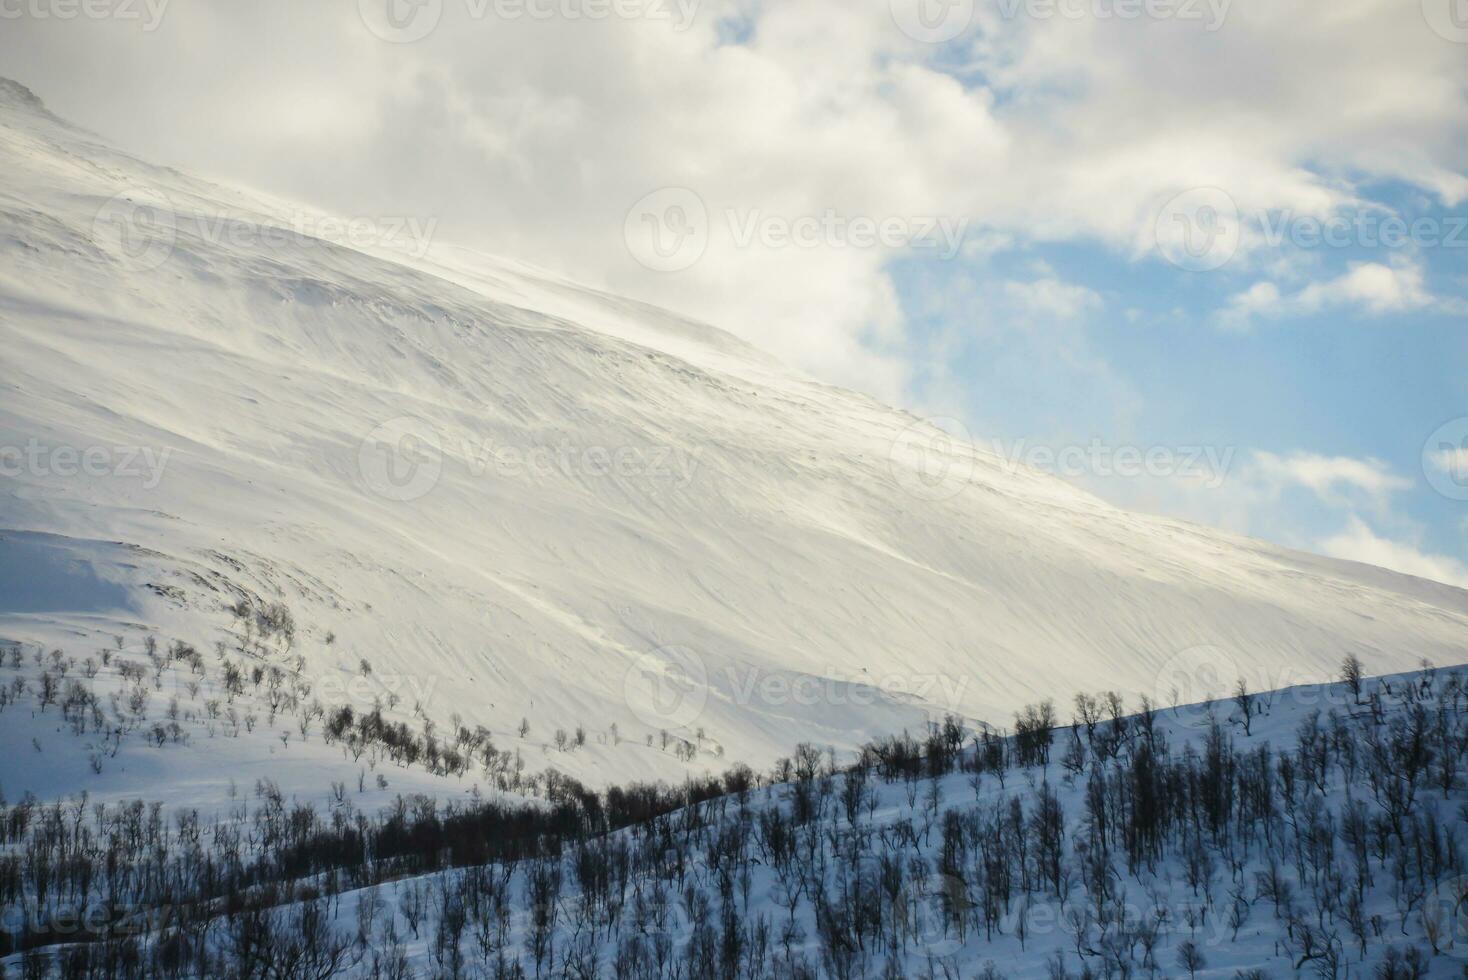 vinter- landskap bergen med snö foto